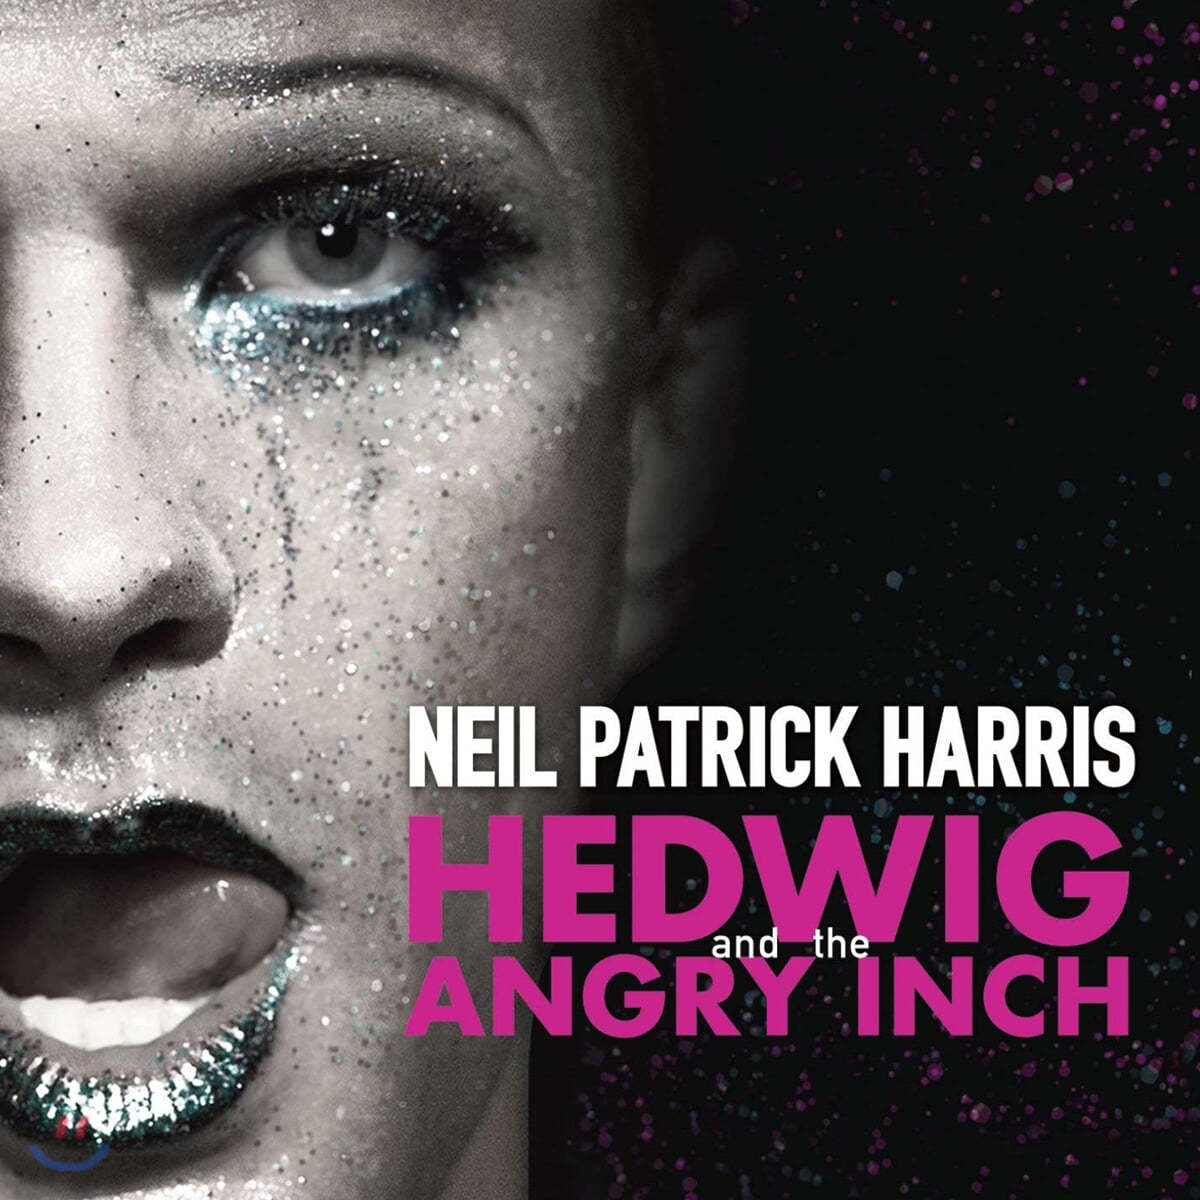 뮤지컬 헤드윅 OST - 2014 브로드웨이 닐 패트릭 버전 (Neil Patrick Harris - Hedwig and the Angry Inch) [베이비 핑크 컬러 LP]